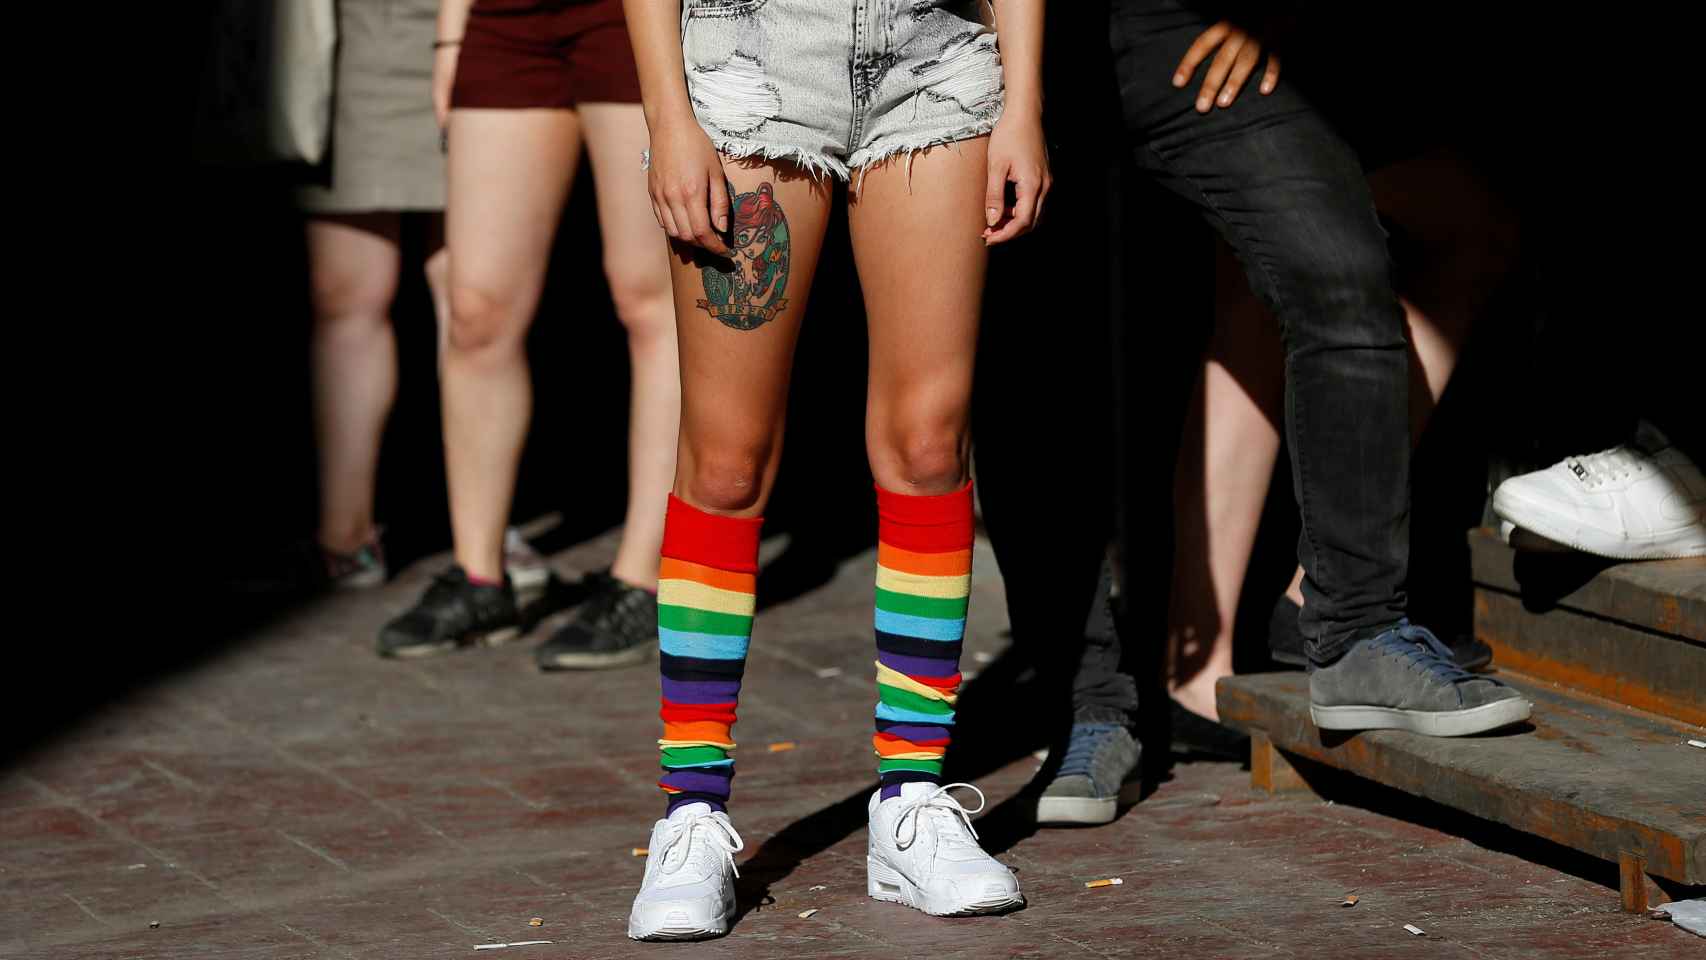 Una manifestante de la marcha luce unas medias con los colores de la bandera arcoiris.